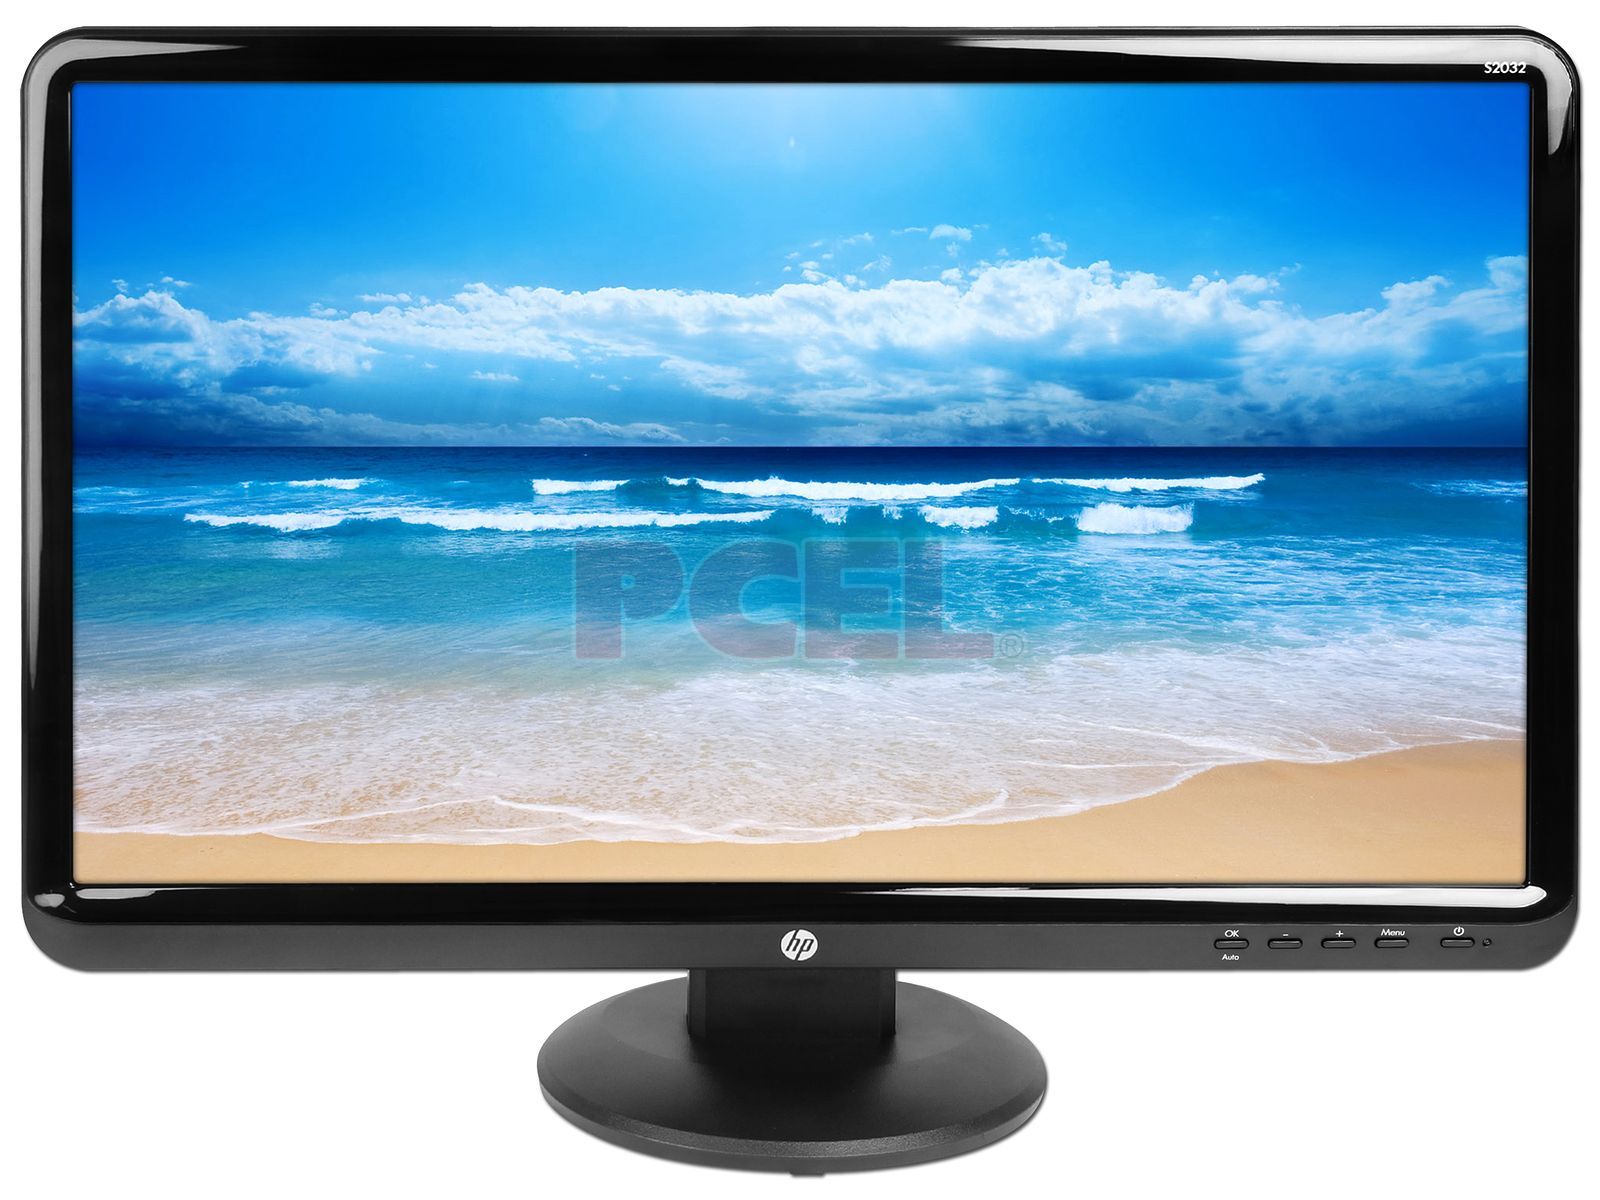 Monitor HP 32 - Especificaciones del producto